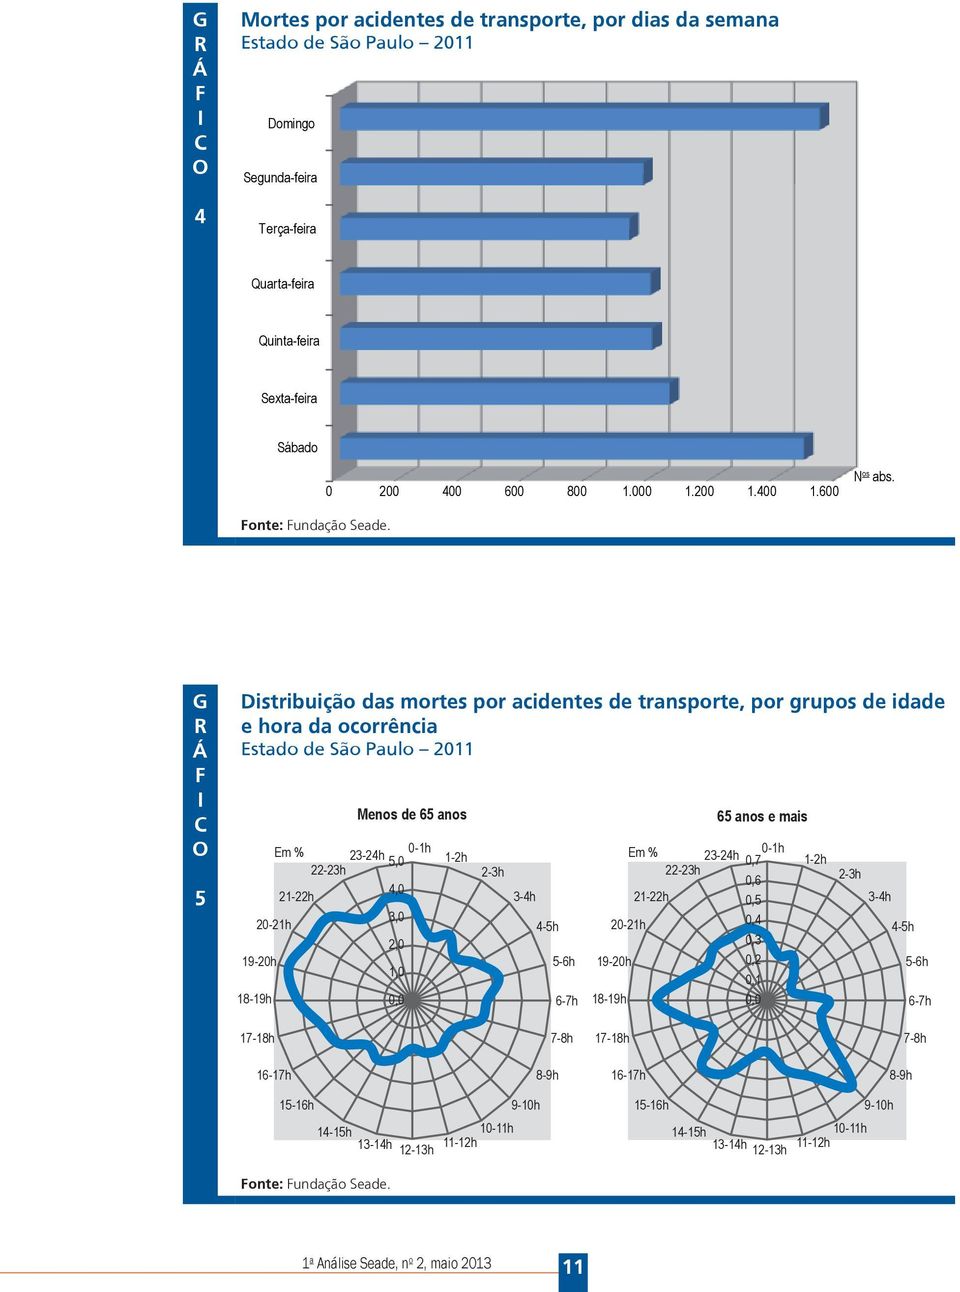 G R Á F I C O 5 Distribuição das mortes por acidentes de transporte, por grupos de idade e hora da ocorrência Estado de São Paulo 2011 Menos de 65 anos Em % 0-1h 23-24h 5,0 1-2h Em % 22-23h 2-3h